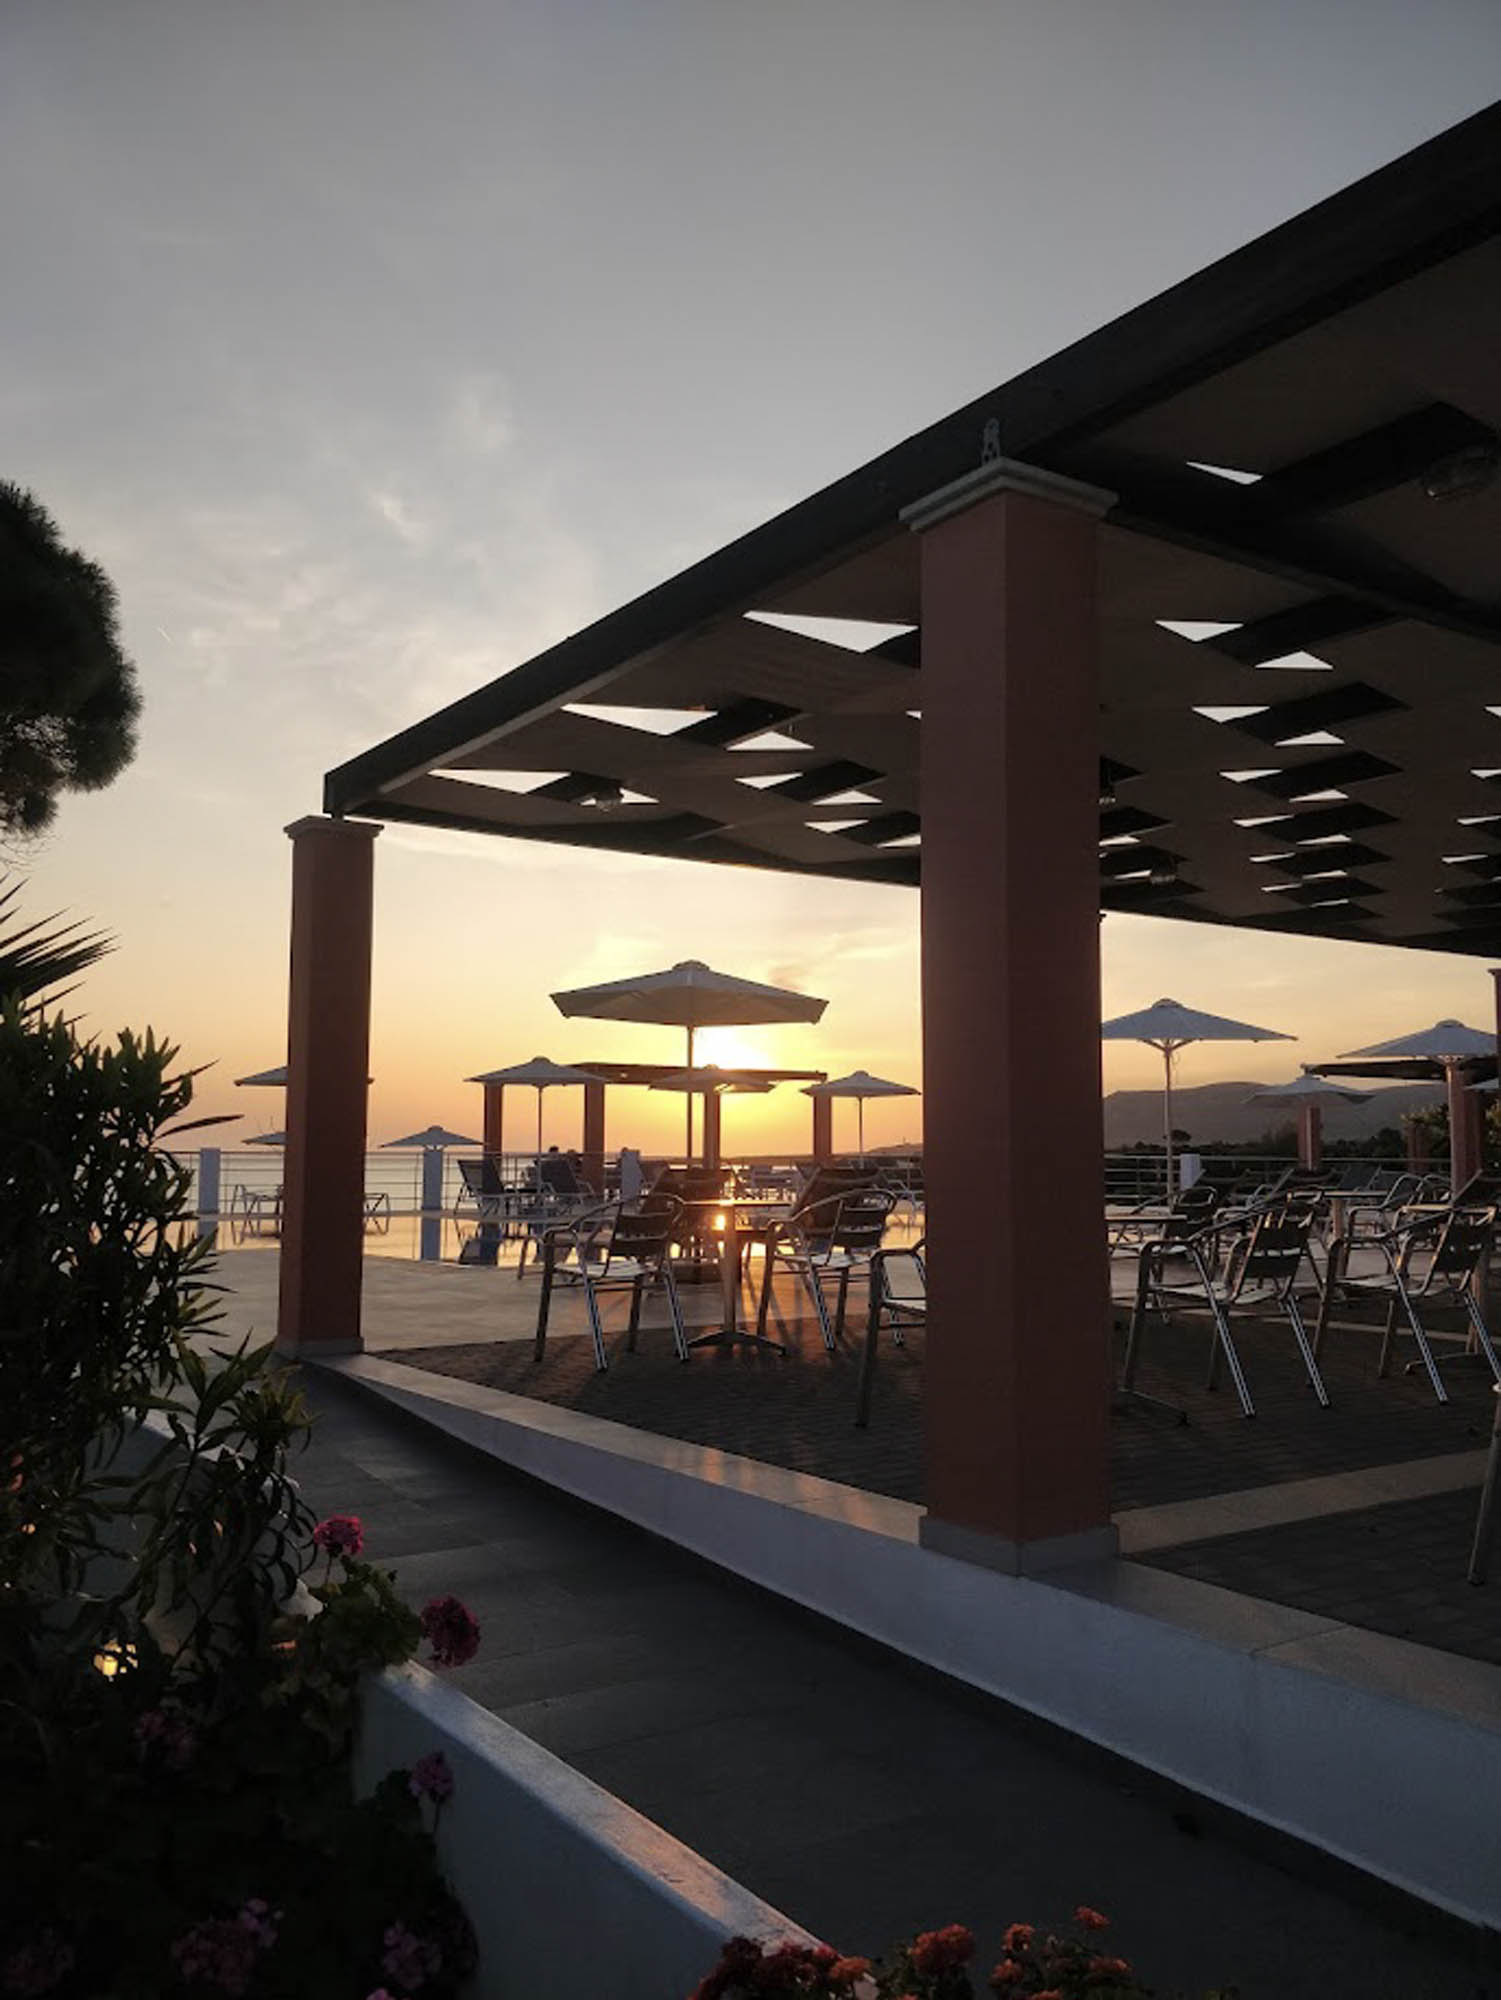 wspomnienie z wakacji, hotel Remetzo na kefalonii, piękny zachód słońca nad parasolkami na plaży